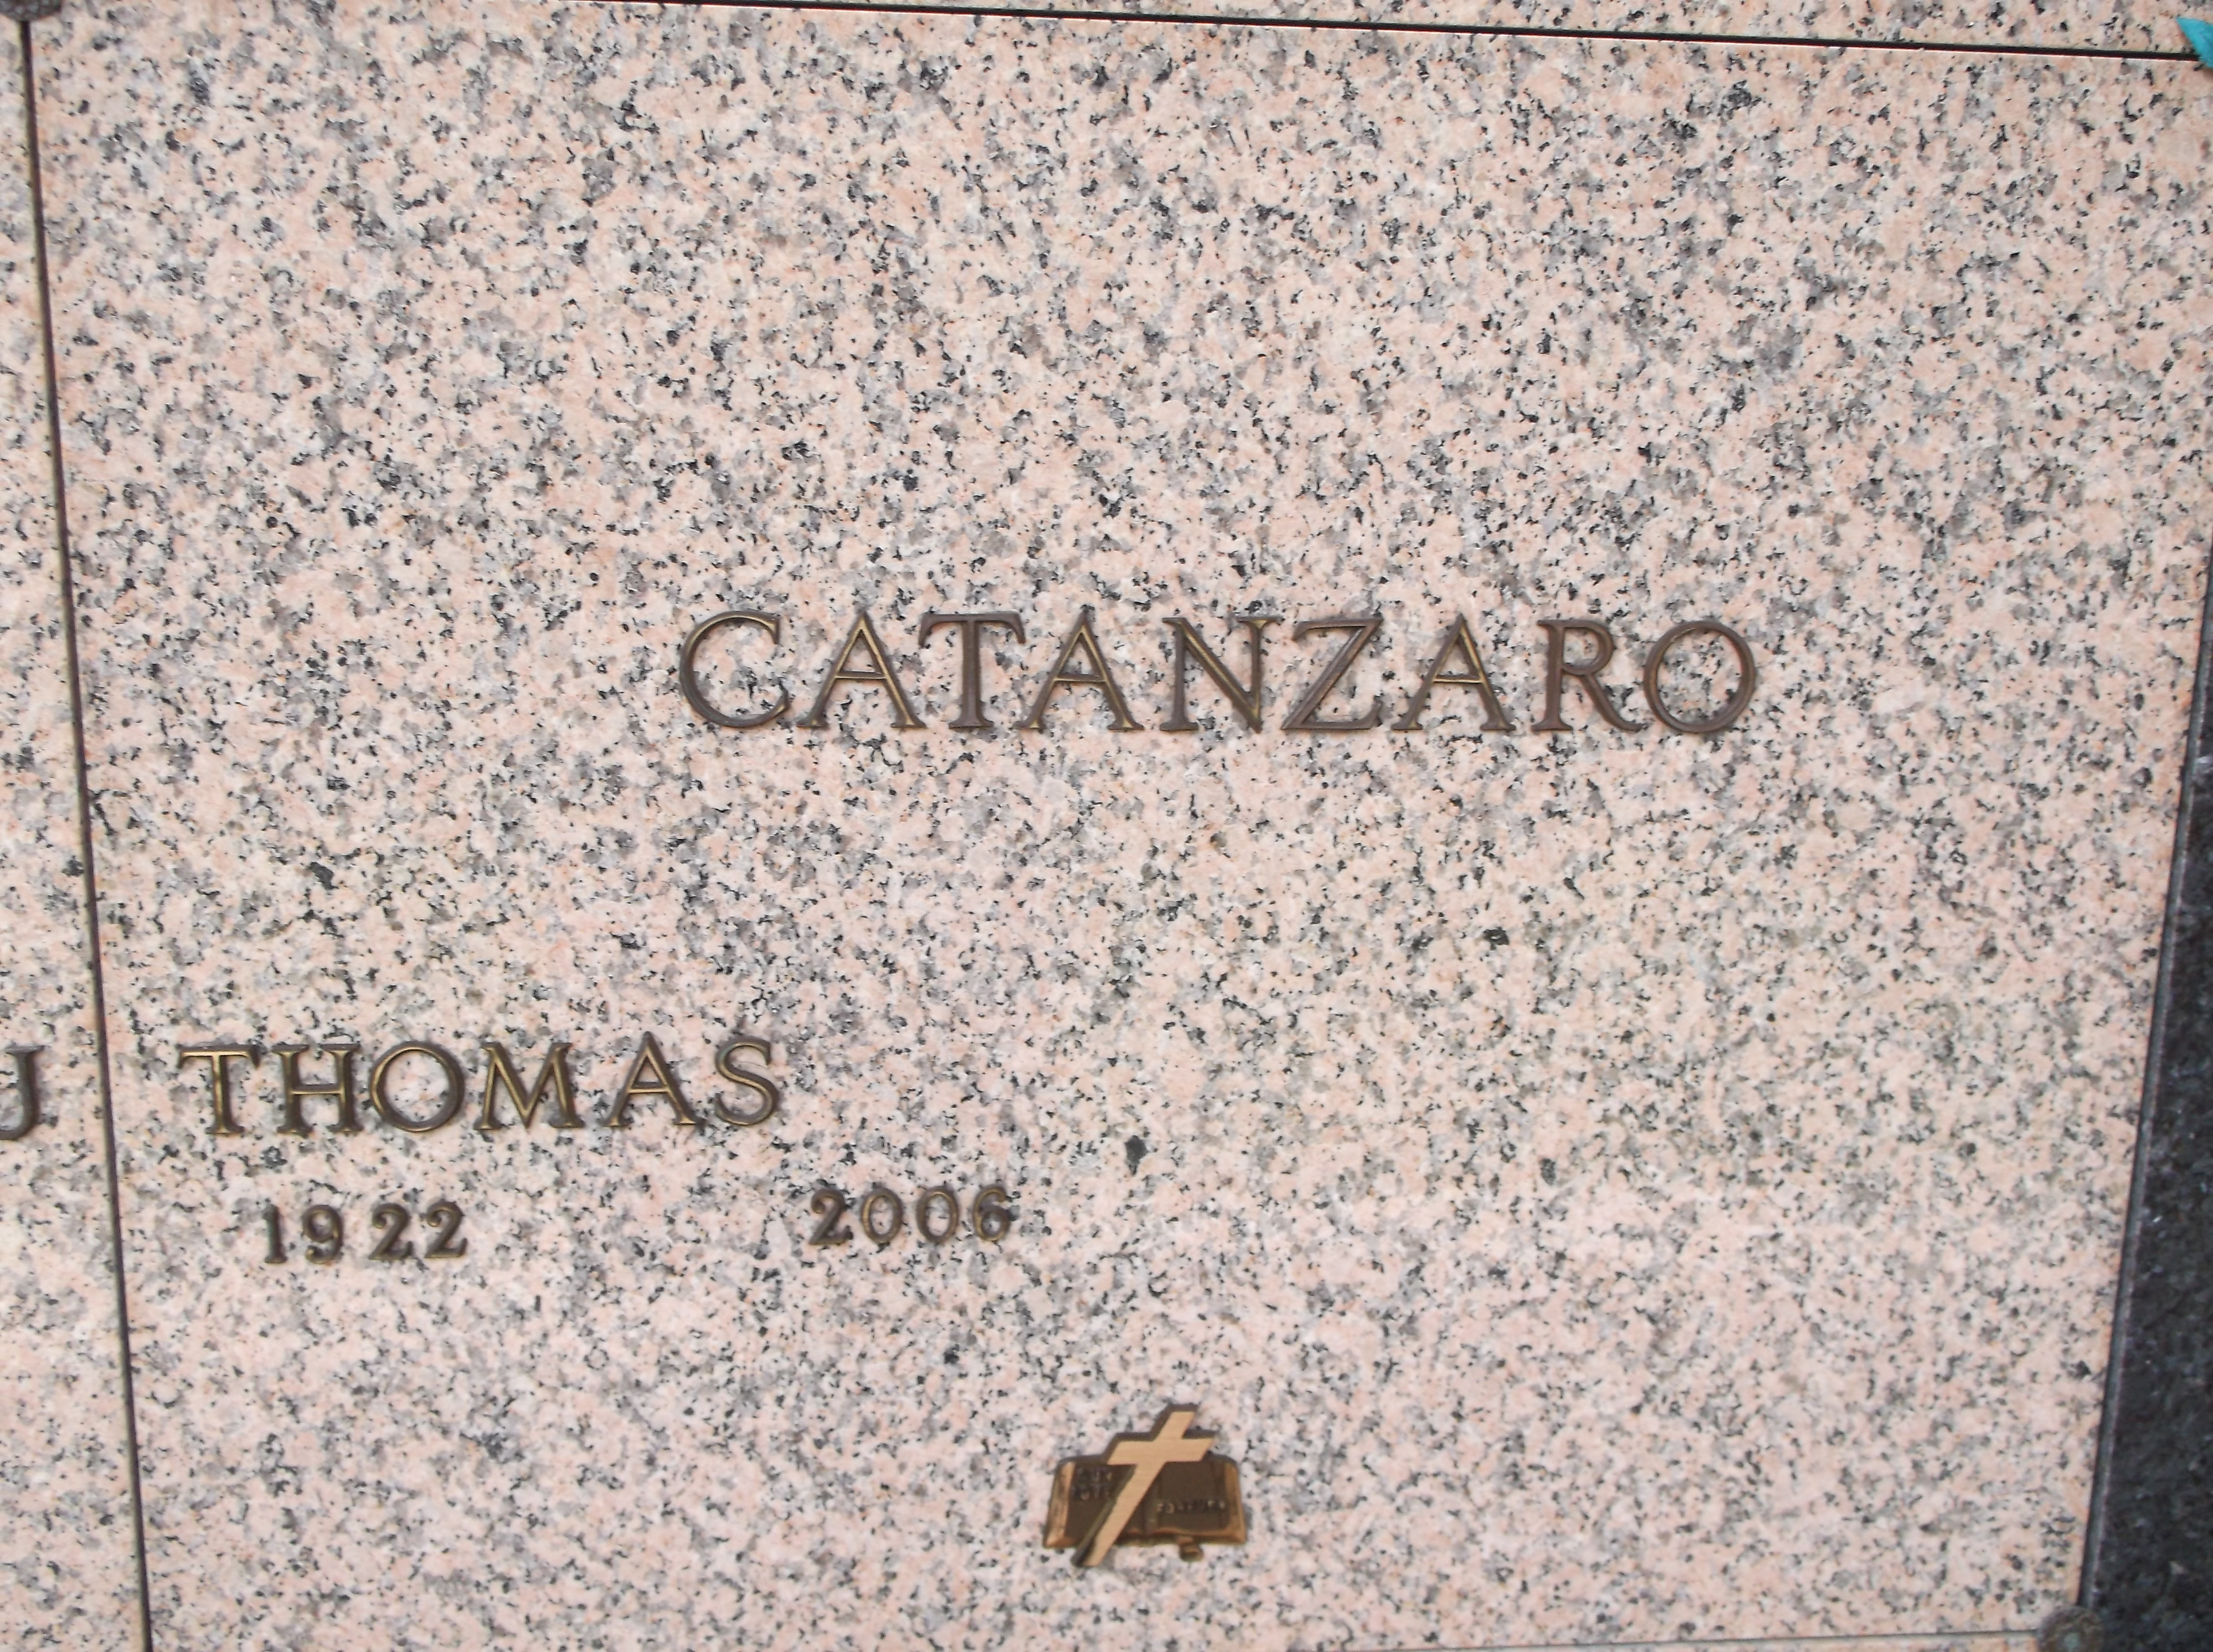 Thomas Catanzaro